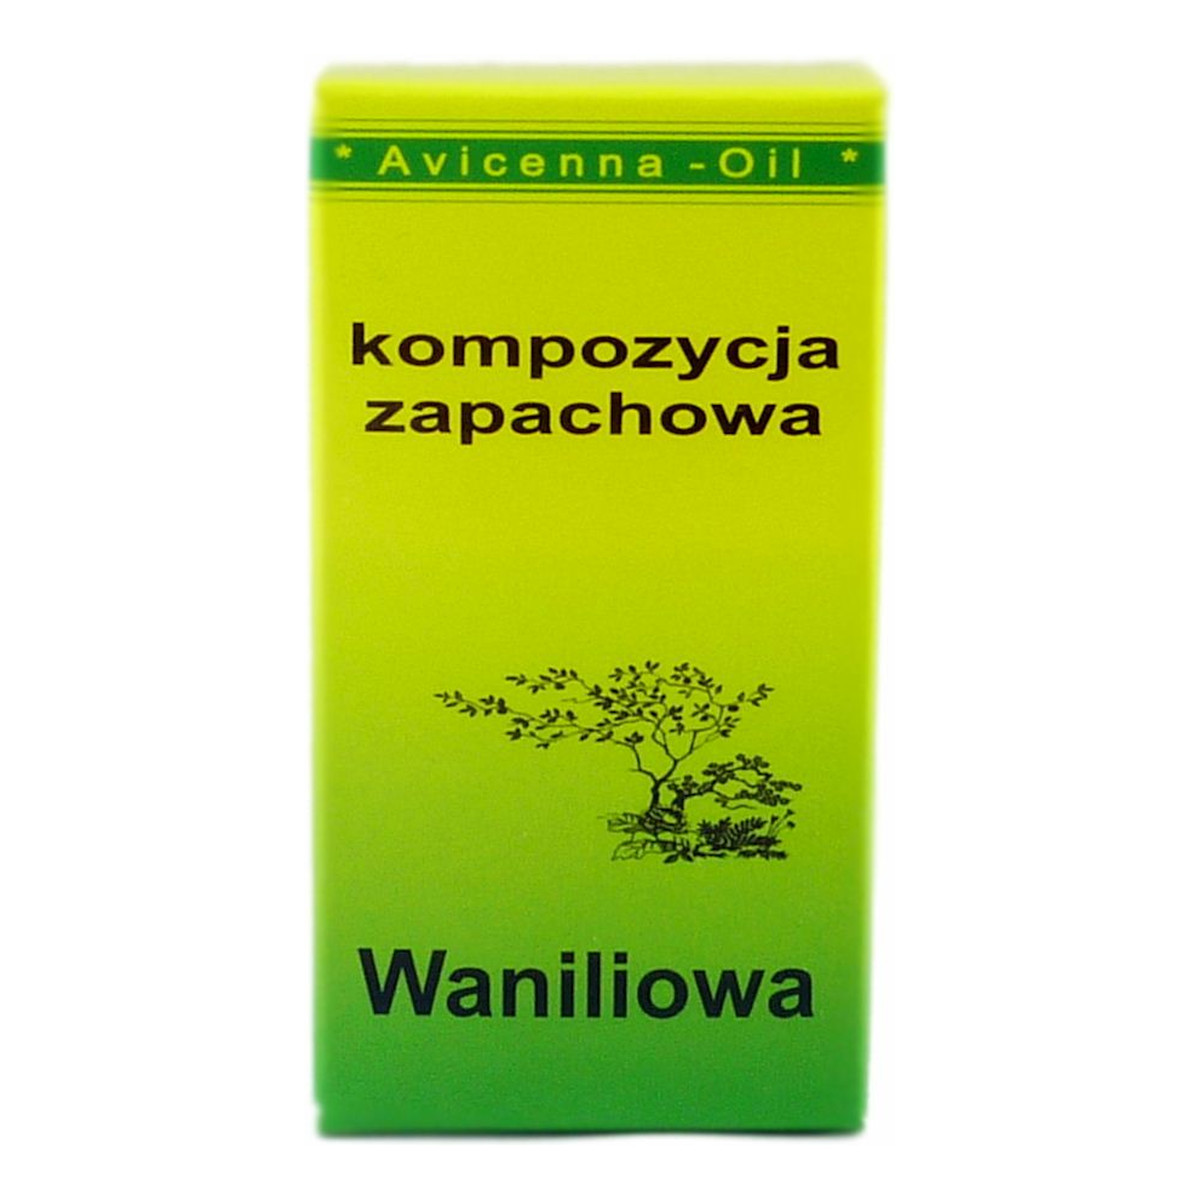 Avicenna-Oil Olejek Zapachowy kompozycja Waniliowy 7ml